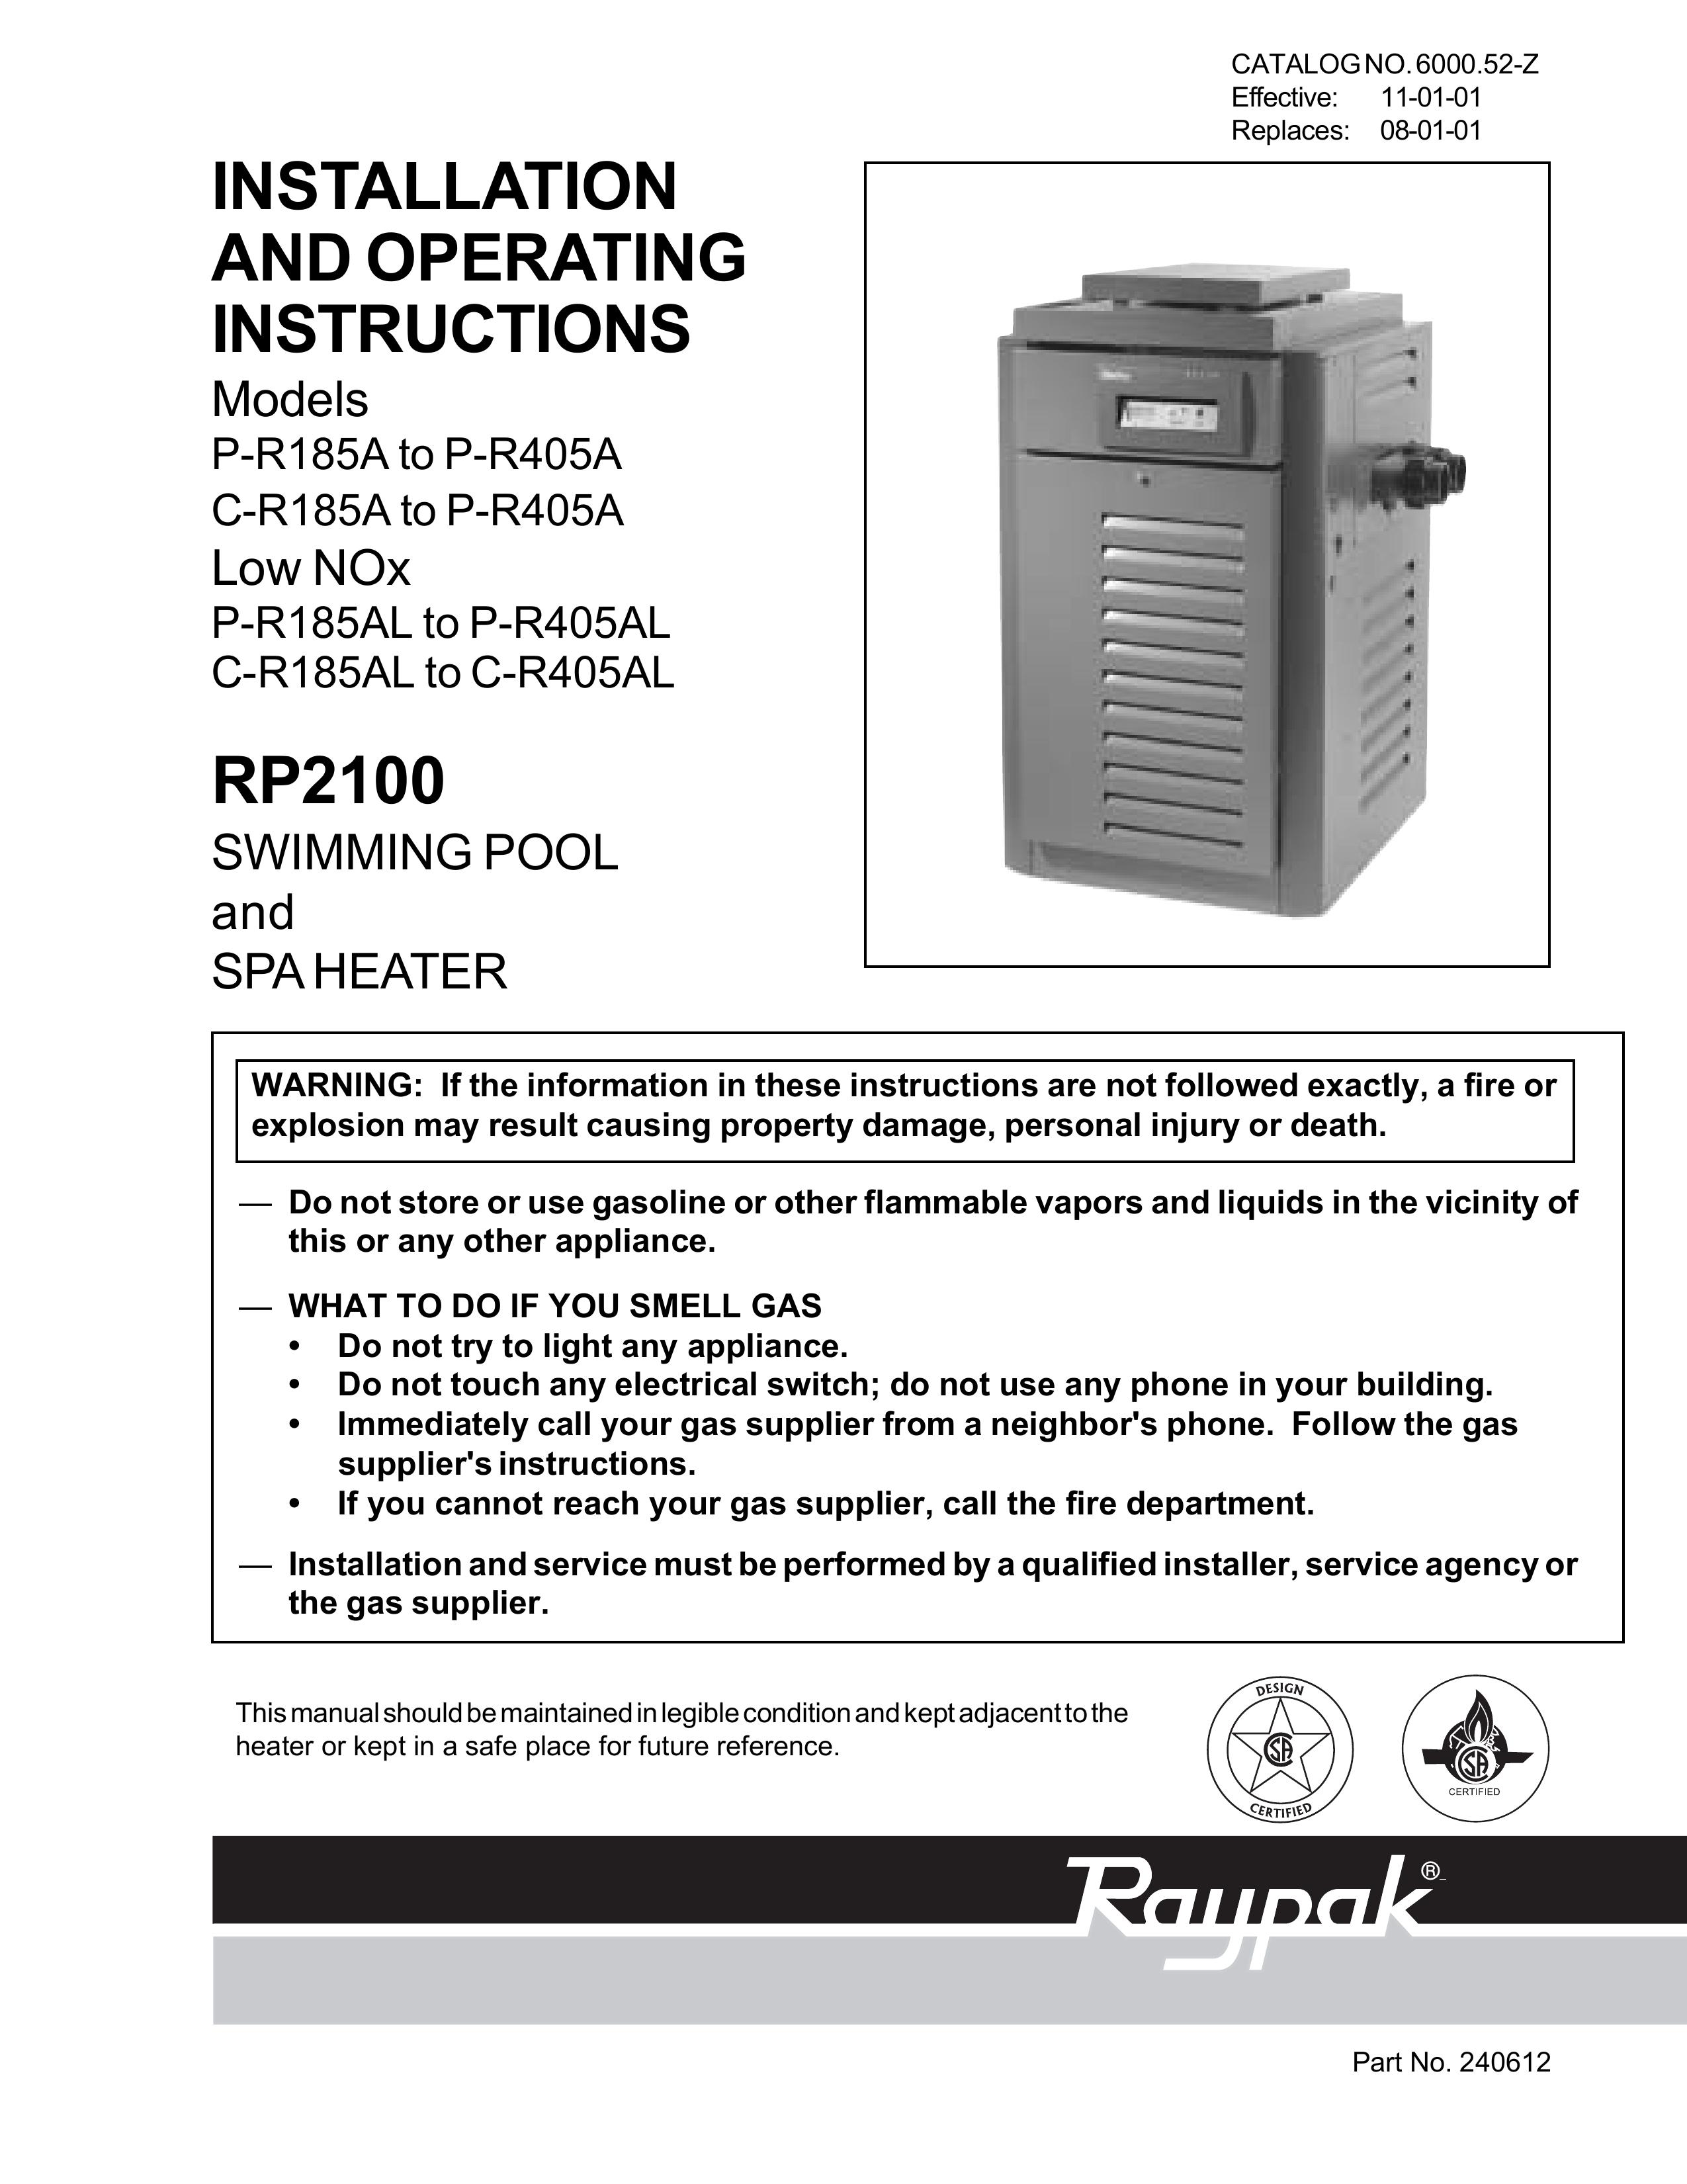 Aqua Products P-R185A to P-R405A, C-R185A to P-R405A, P-R185AL to P-R405AL, C-R185AL to C-R405AL, RP2100 Swimming Pool Filter User Manual